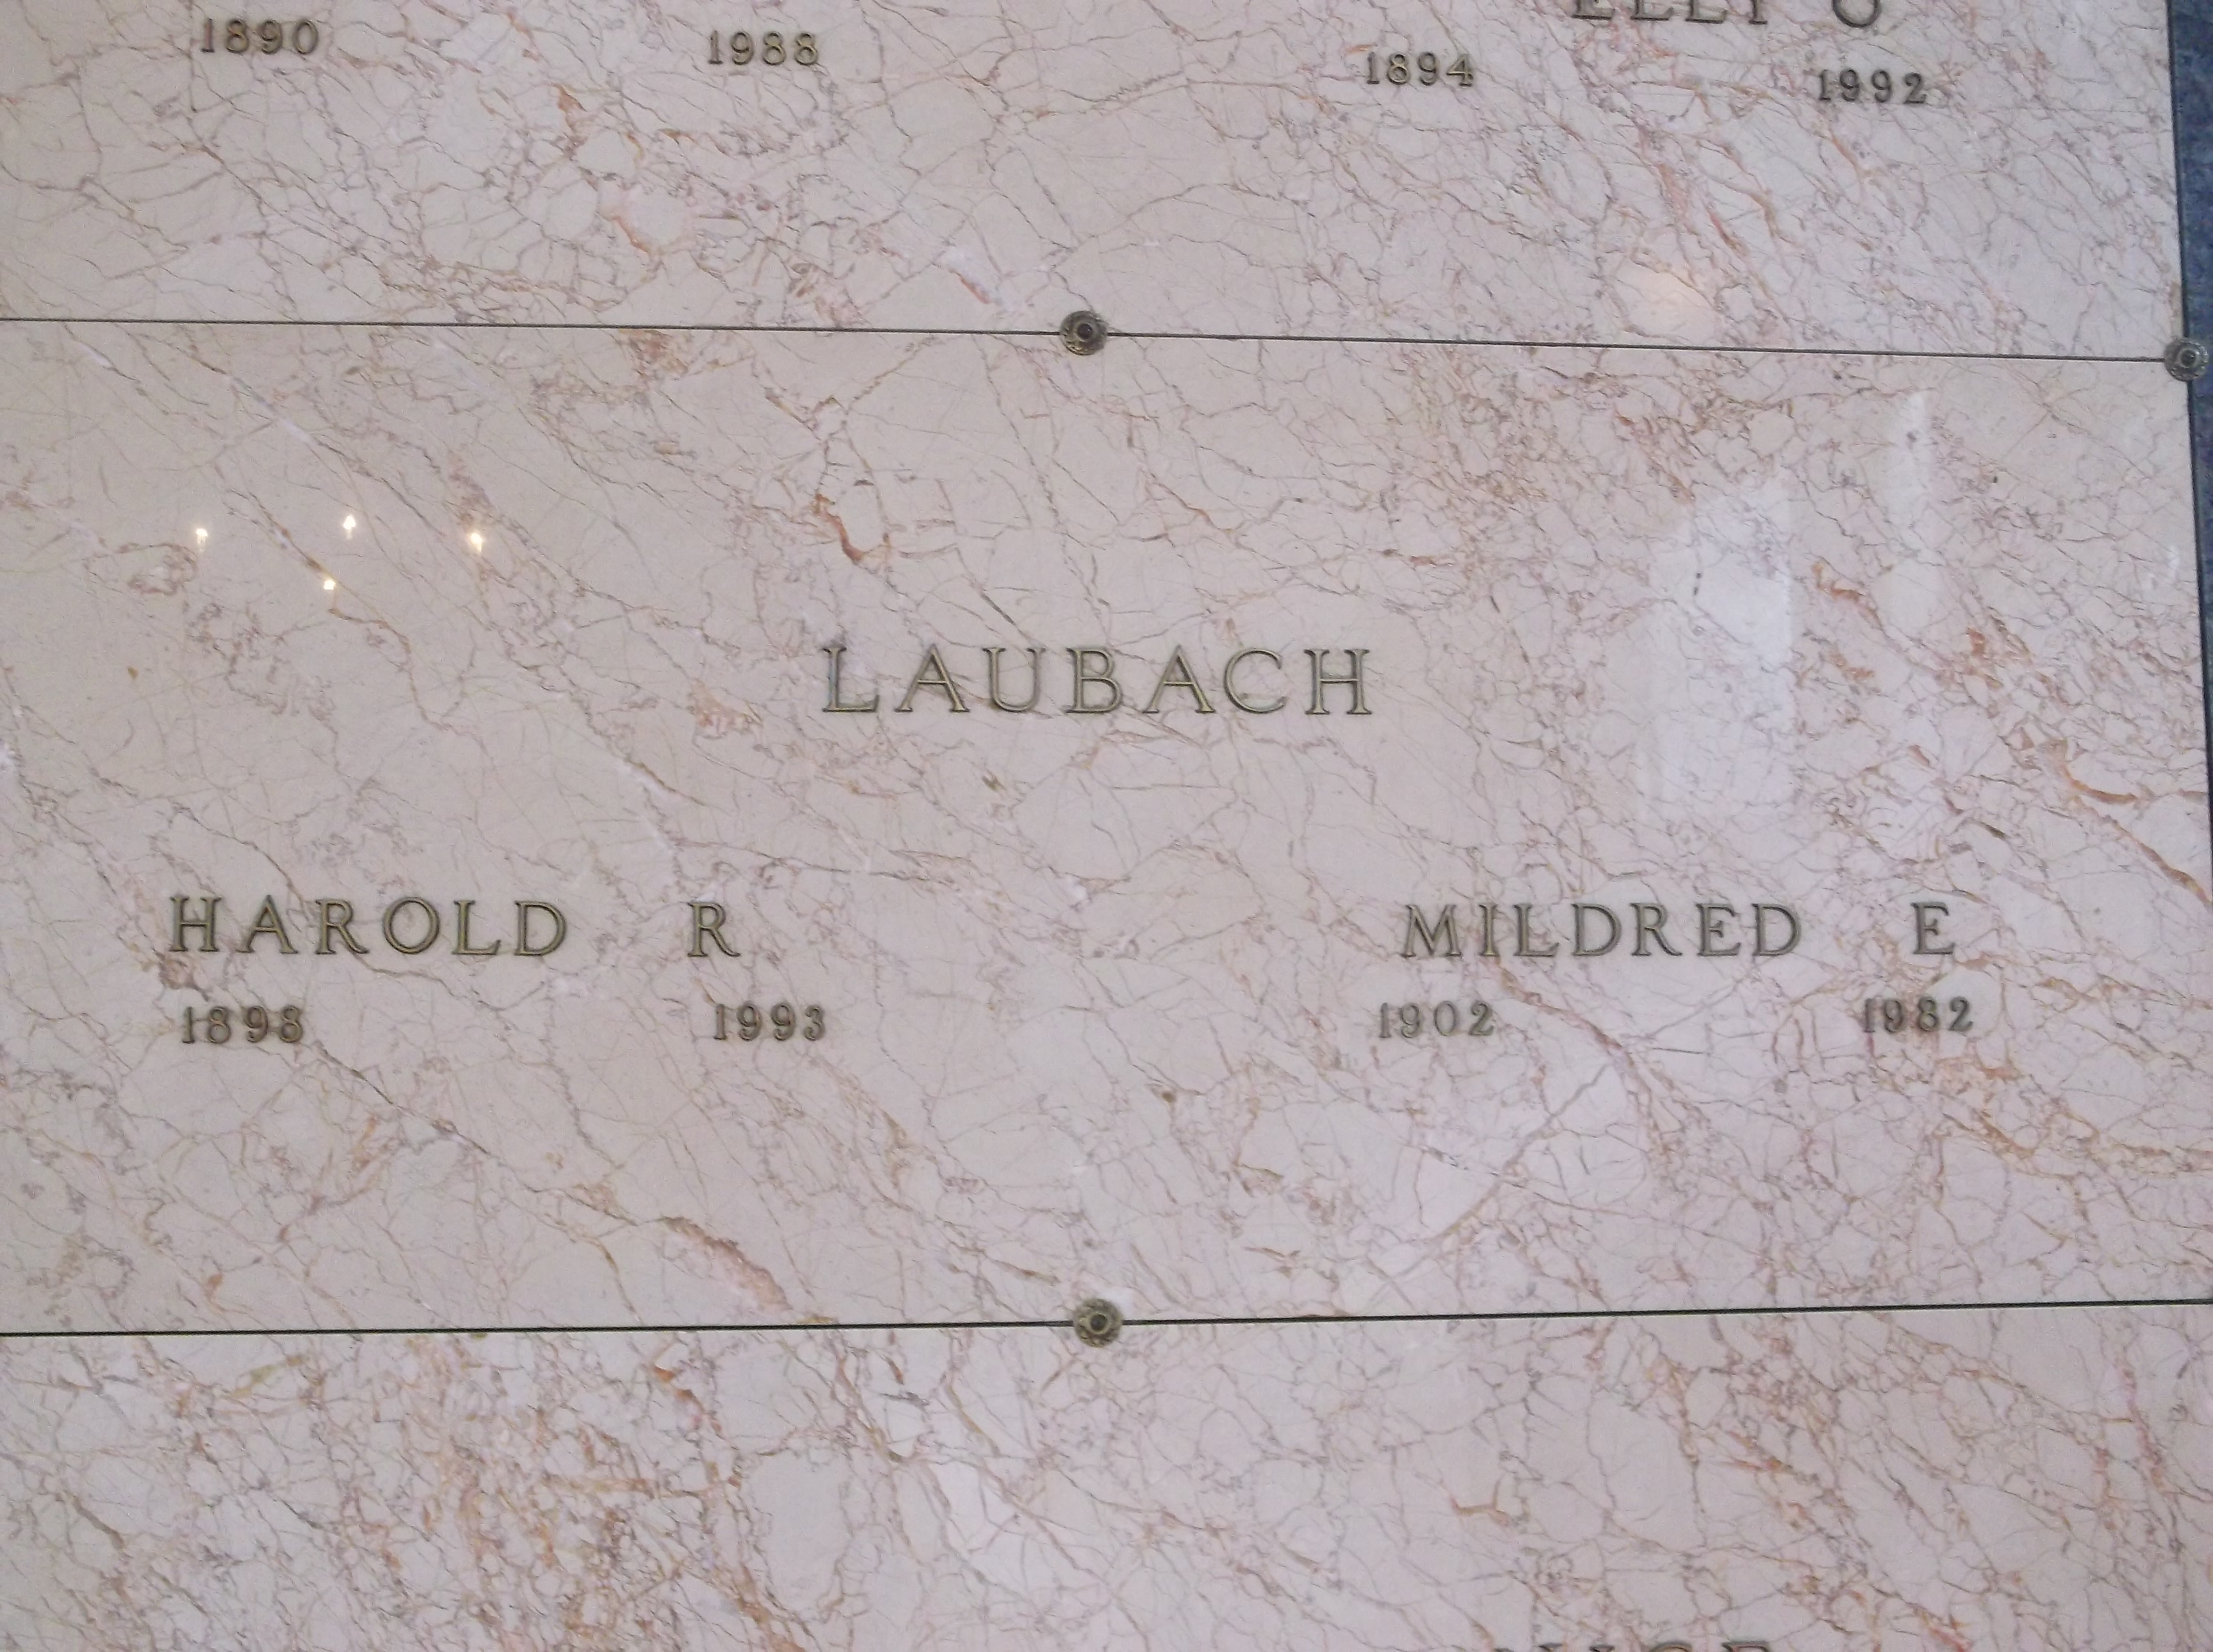 Mildred E Laubach